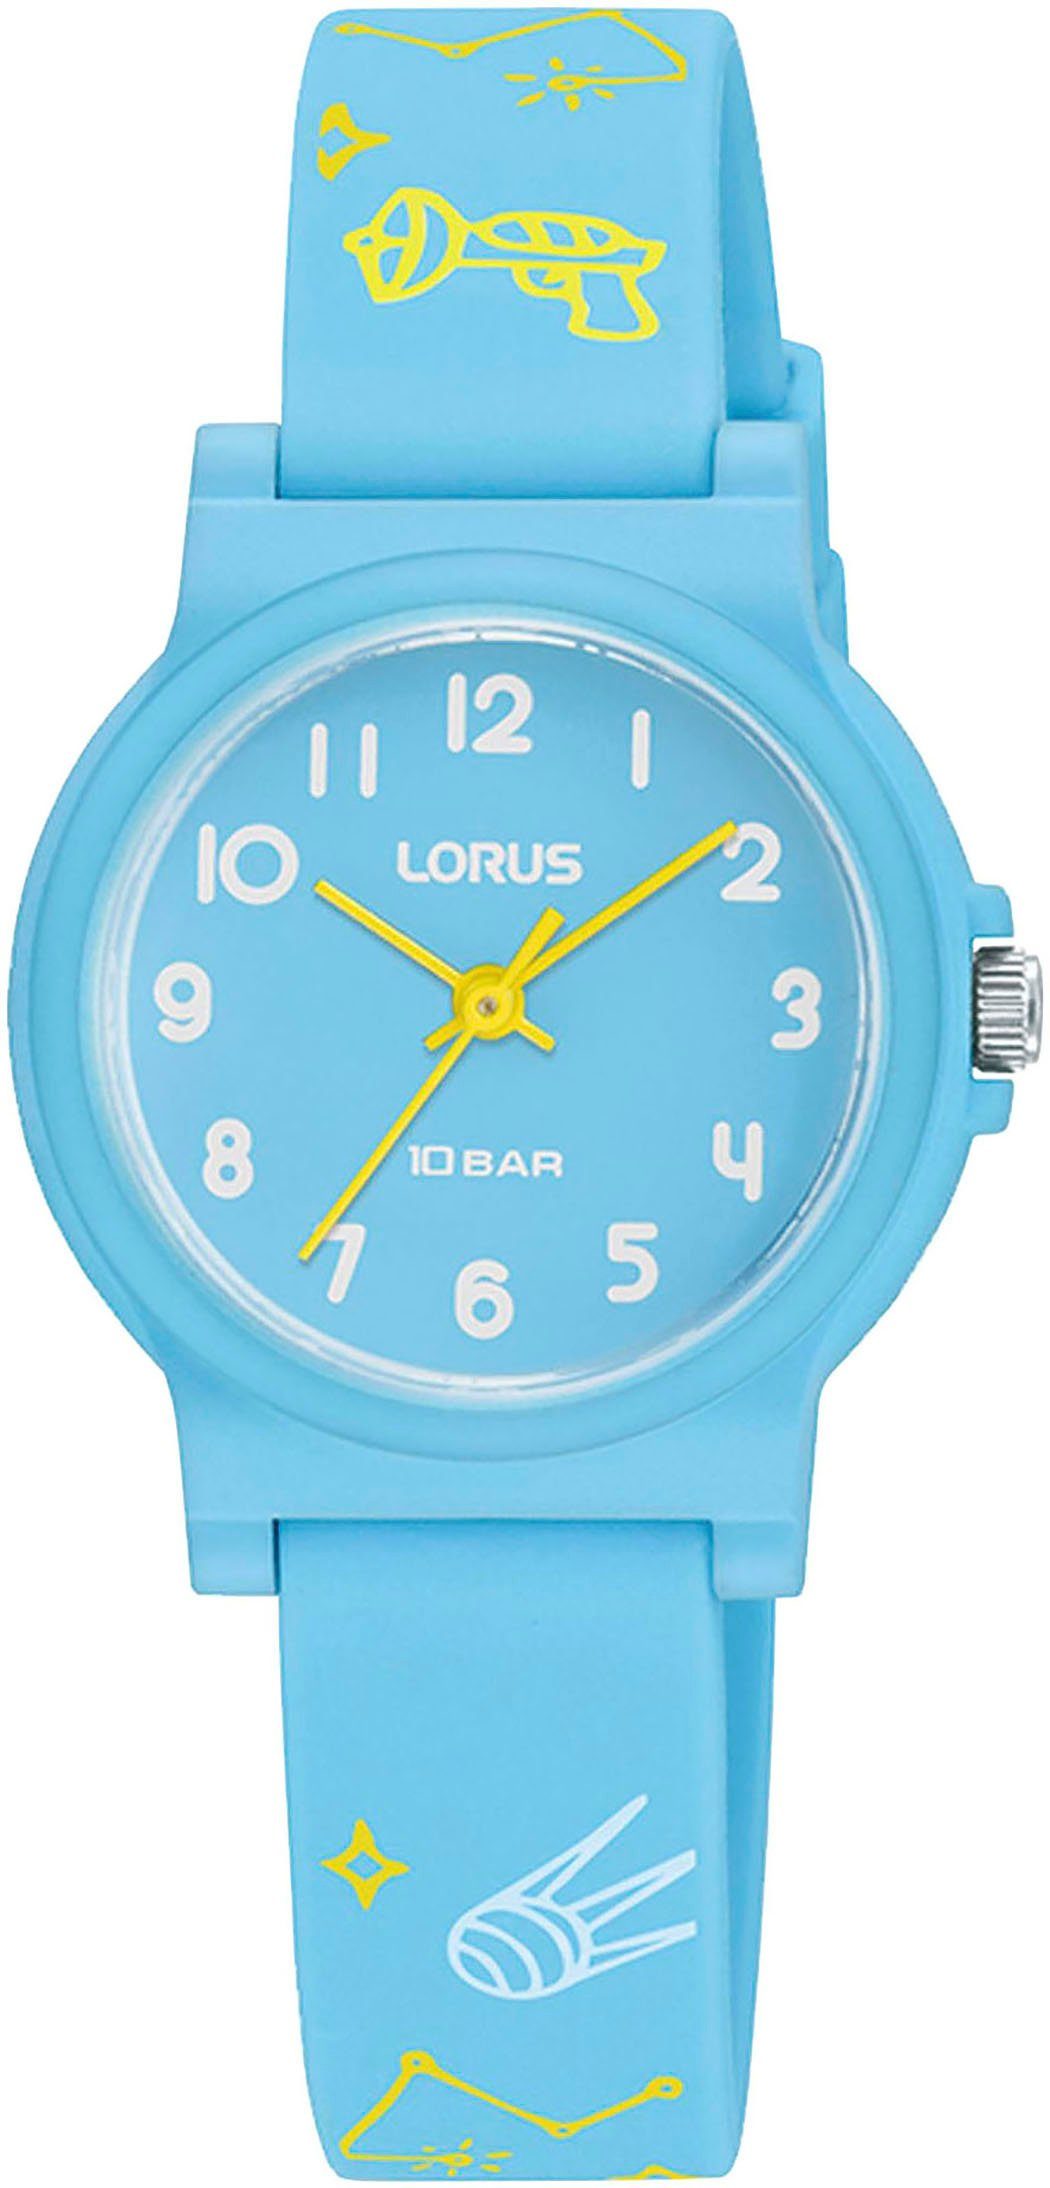 LORUS Quarzuhr, Armbanduhr, Kinderuhr, bis 10 bar wasserdicht, ideal auch als Geschenk